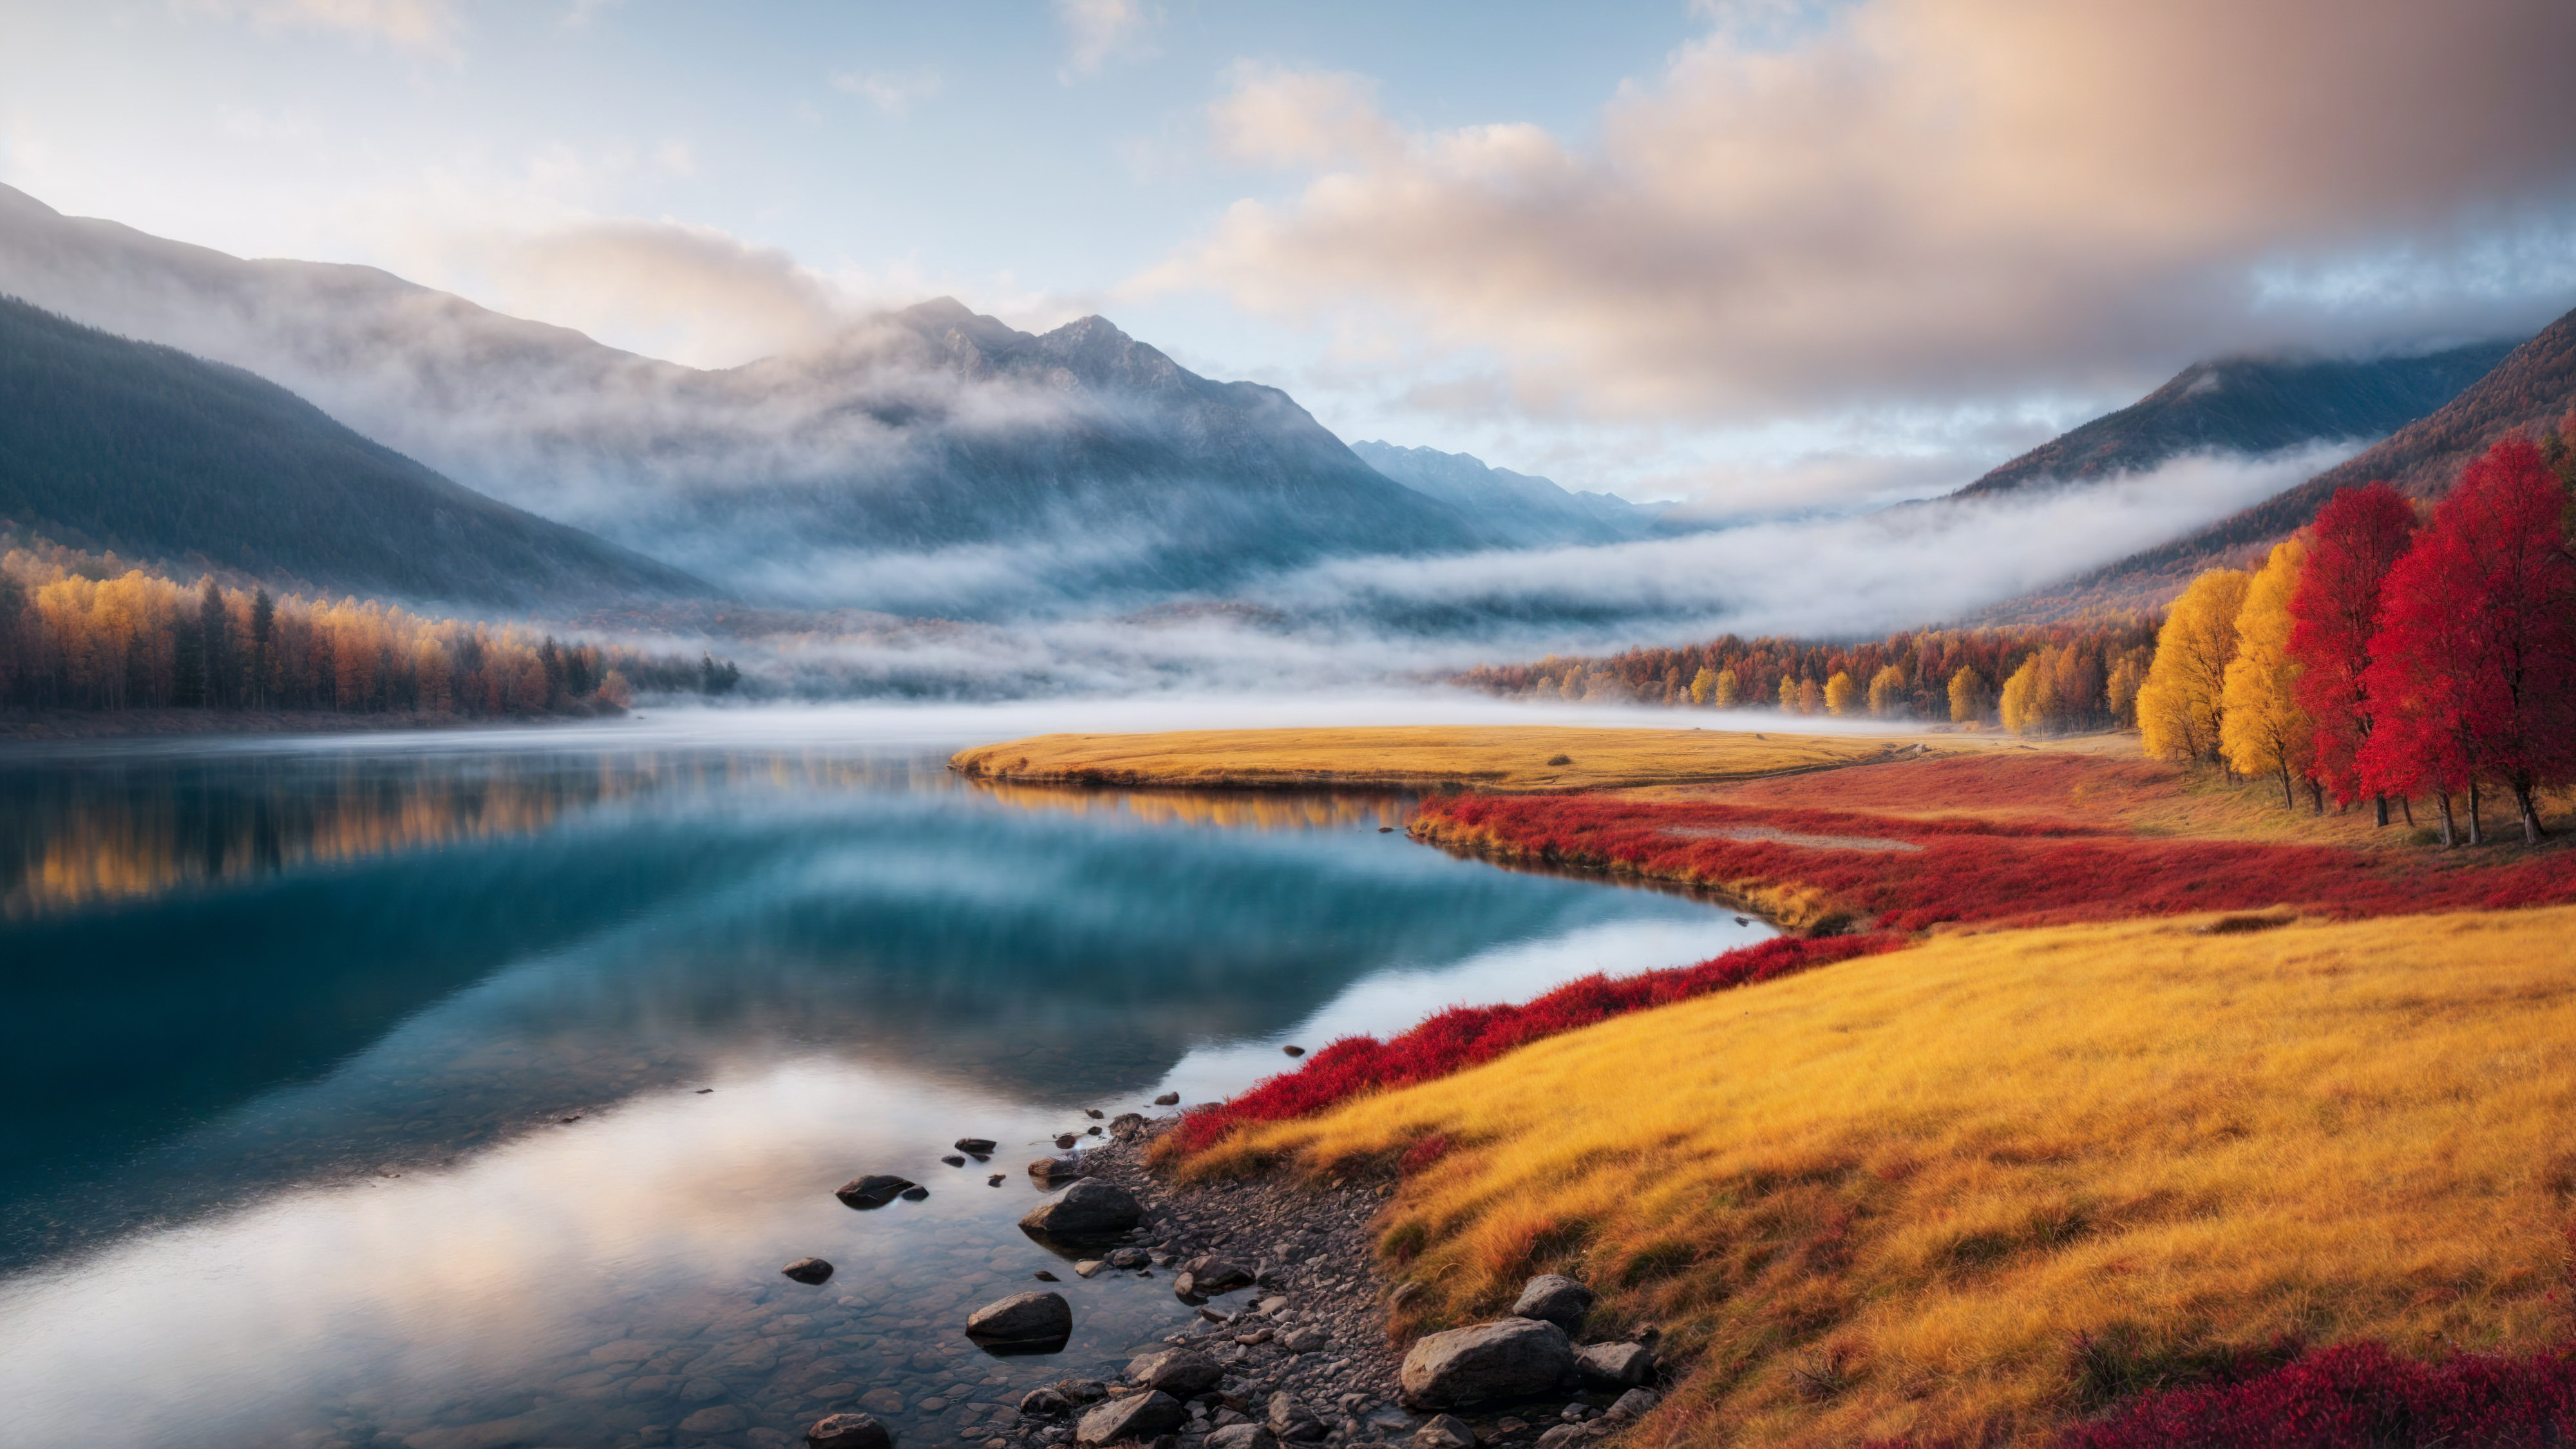 Téléchargez ce fond d'écran de paysage qui capture magnifiquement un paysage automnal coloré de montagnes, avec des arbres jaunes et rouges entourant un lac brumeux.